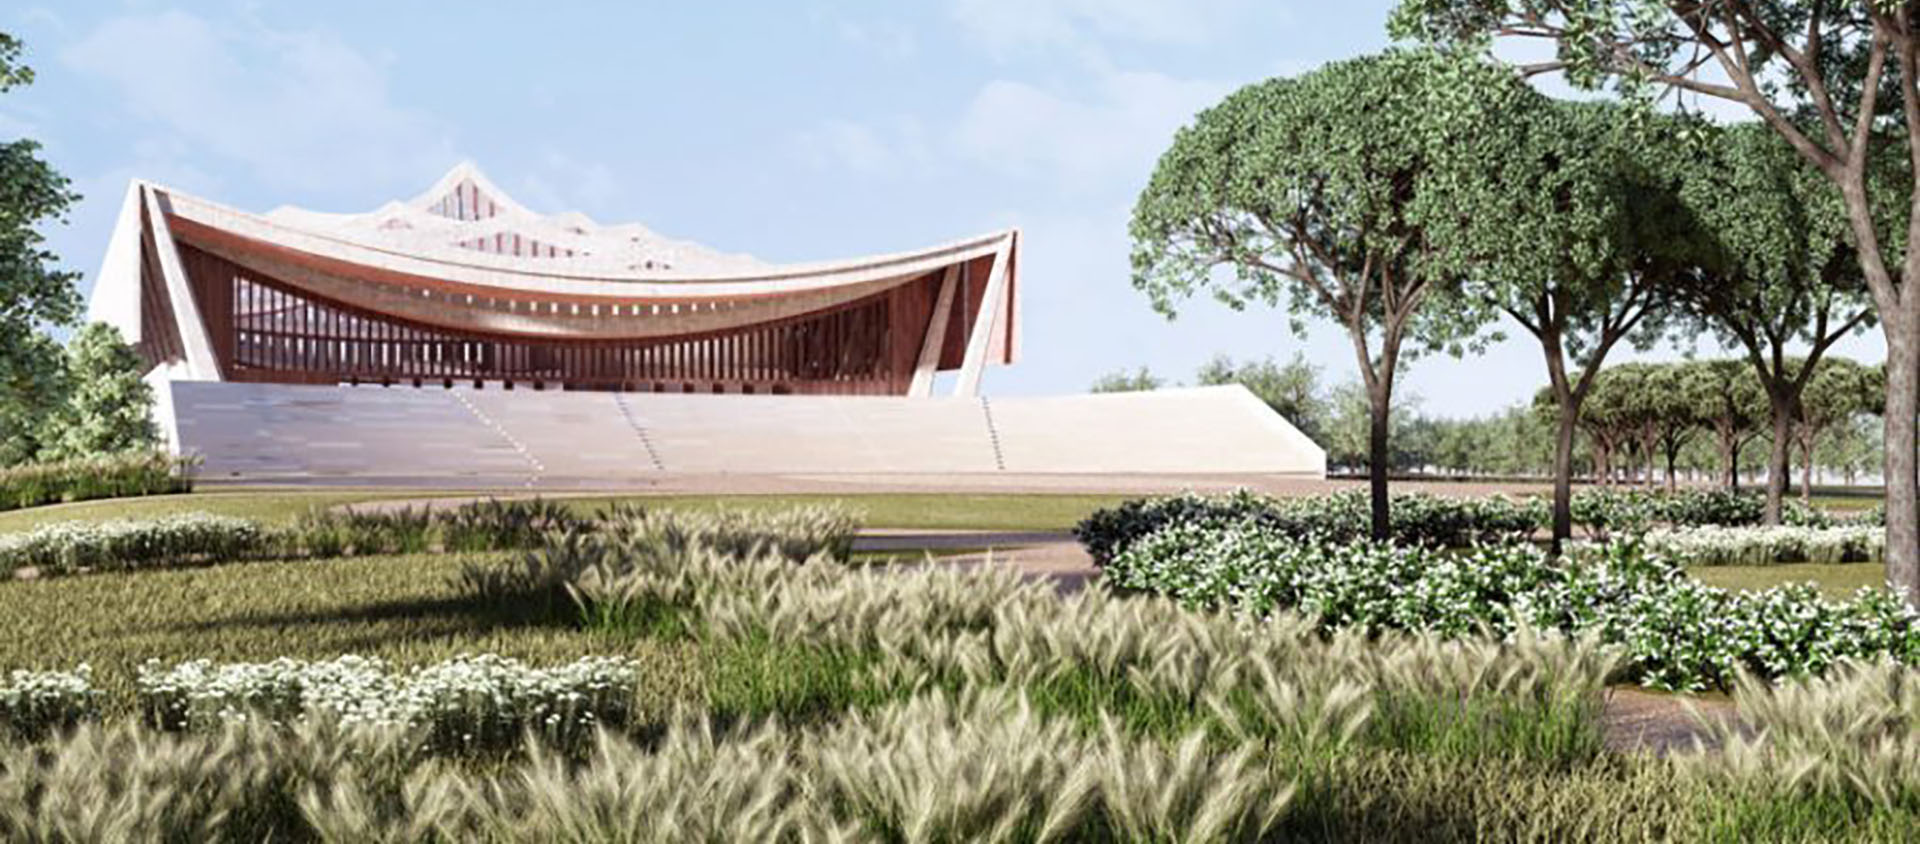 Projet d'architecte de la future cathédrale du Ghana |  DR